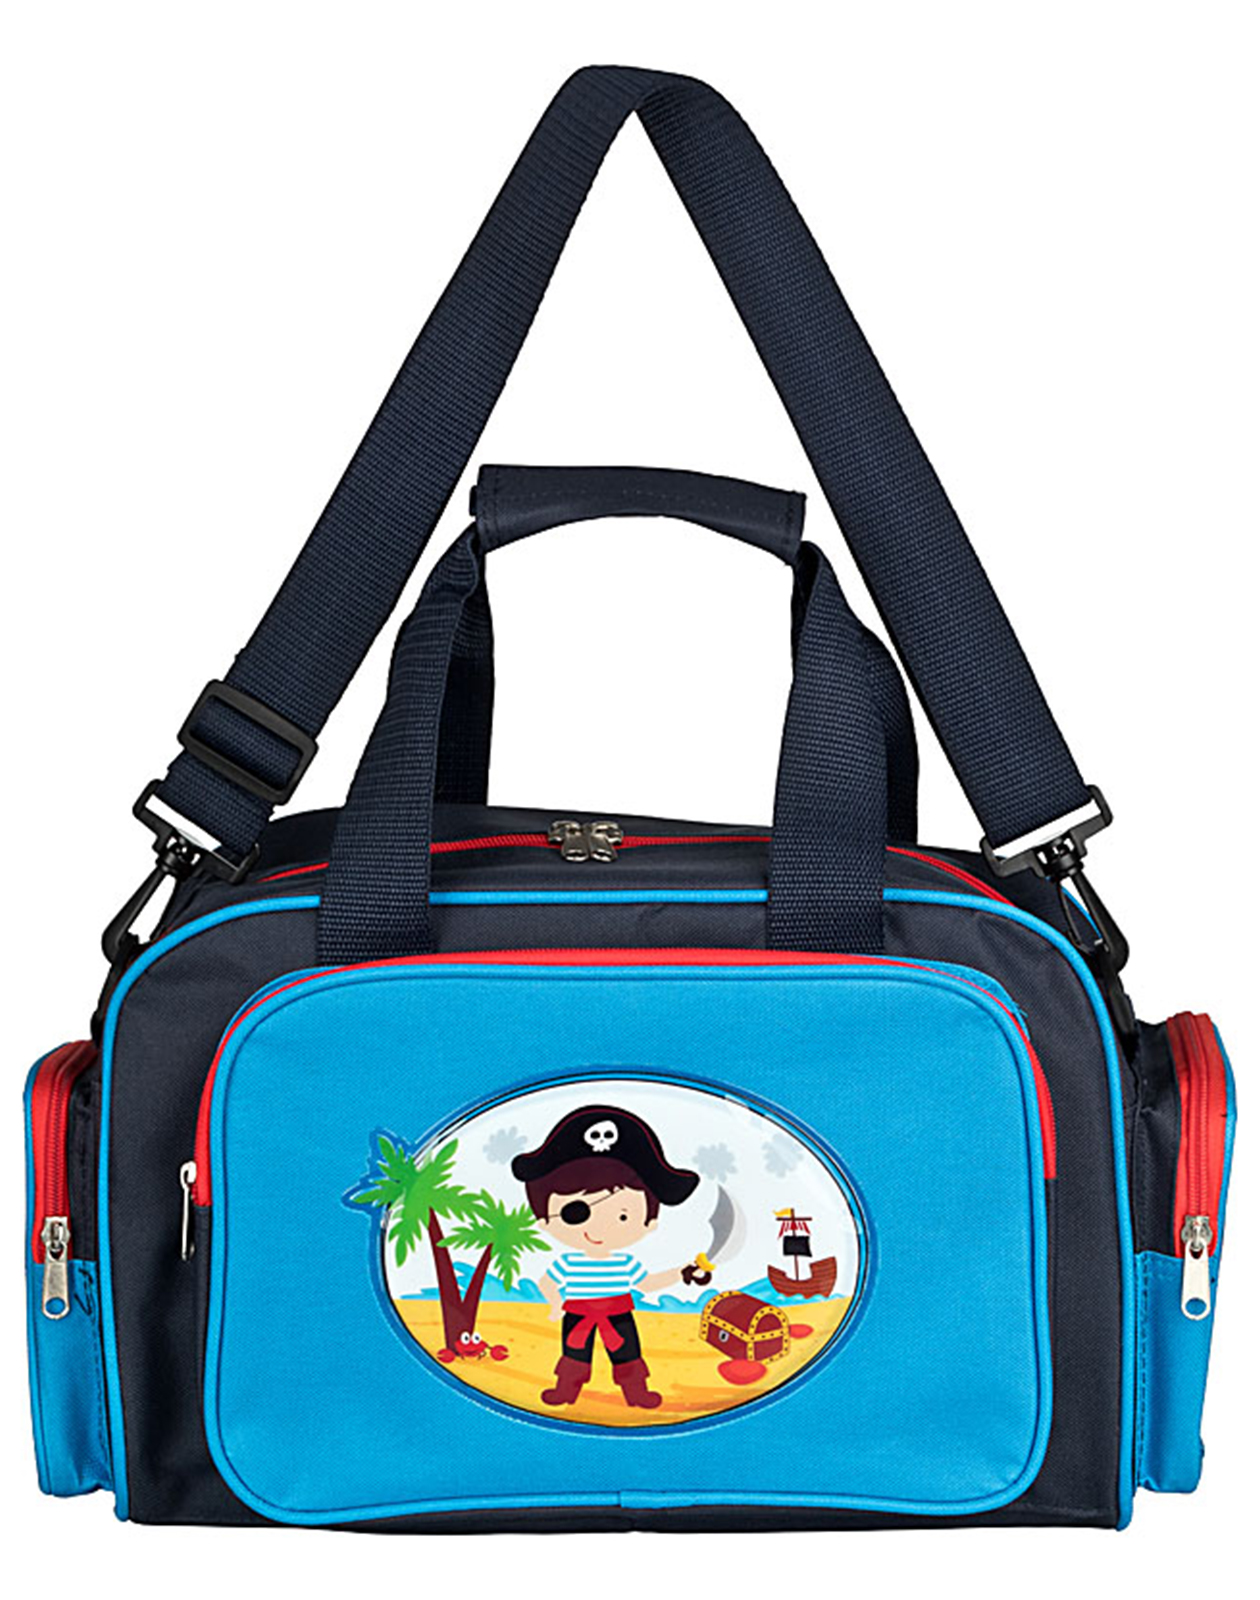 Kinder Reisetasche Kindergartentasche mit Pirat Motiv in blau - 76575